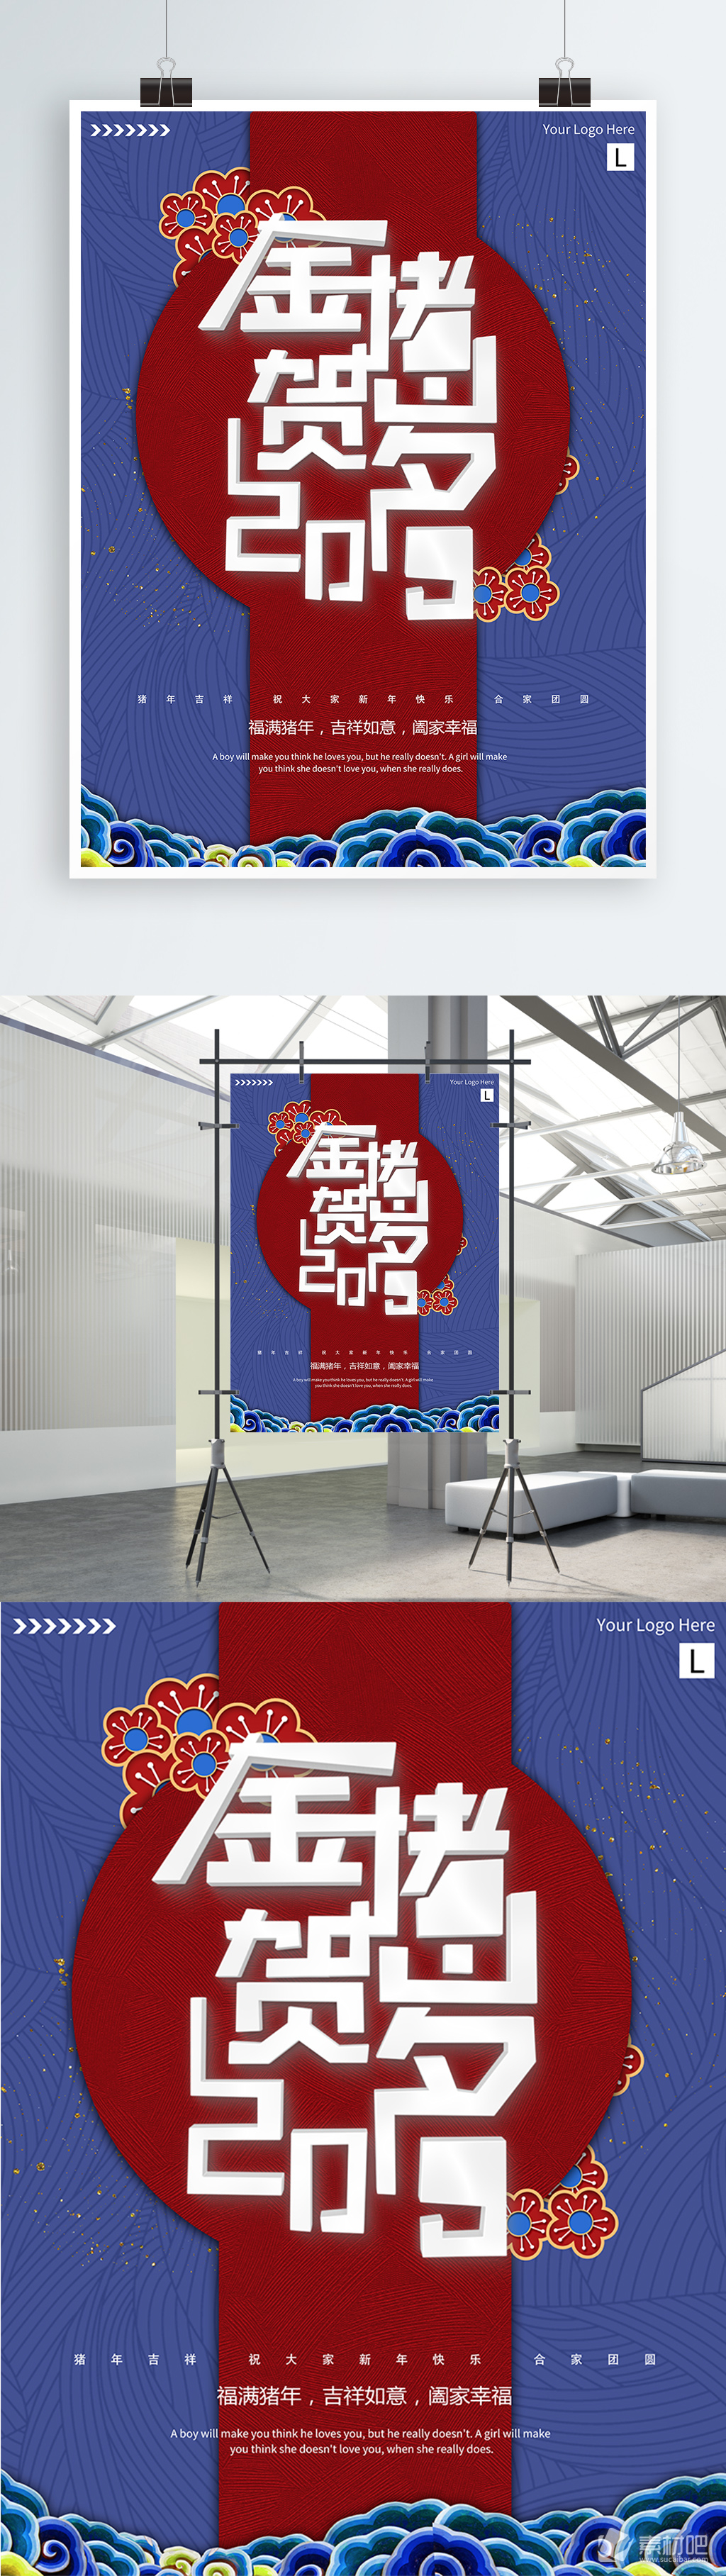 简约大气红色2019猪年节日海报